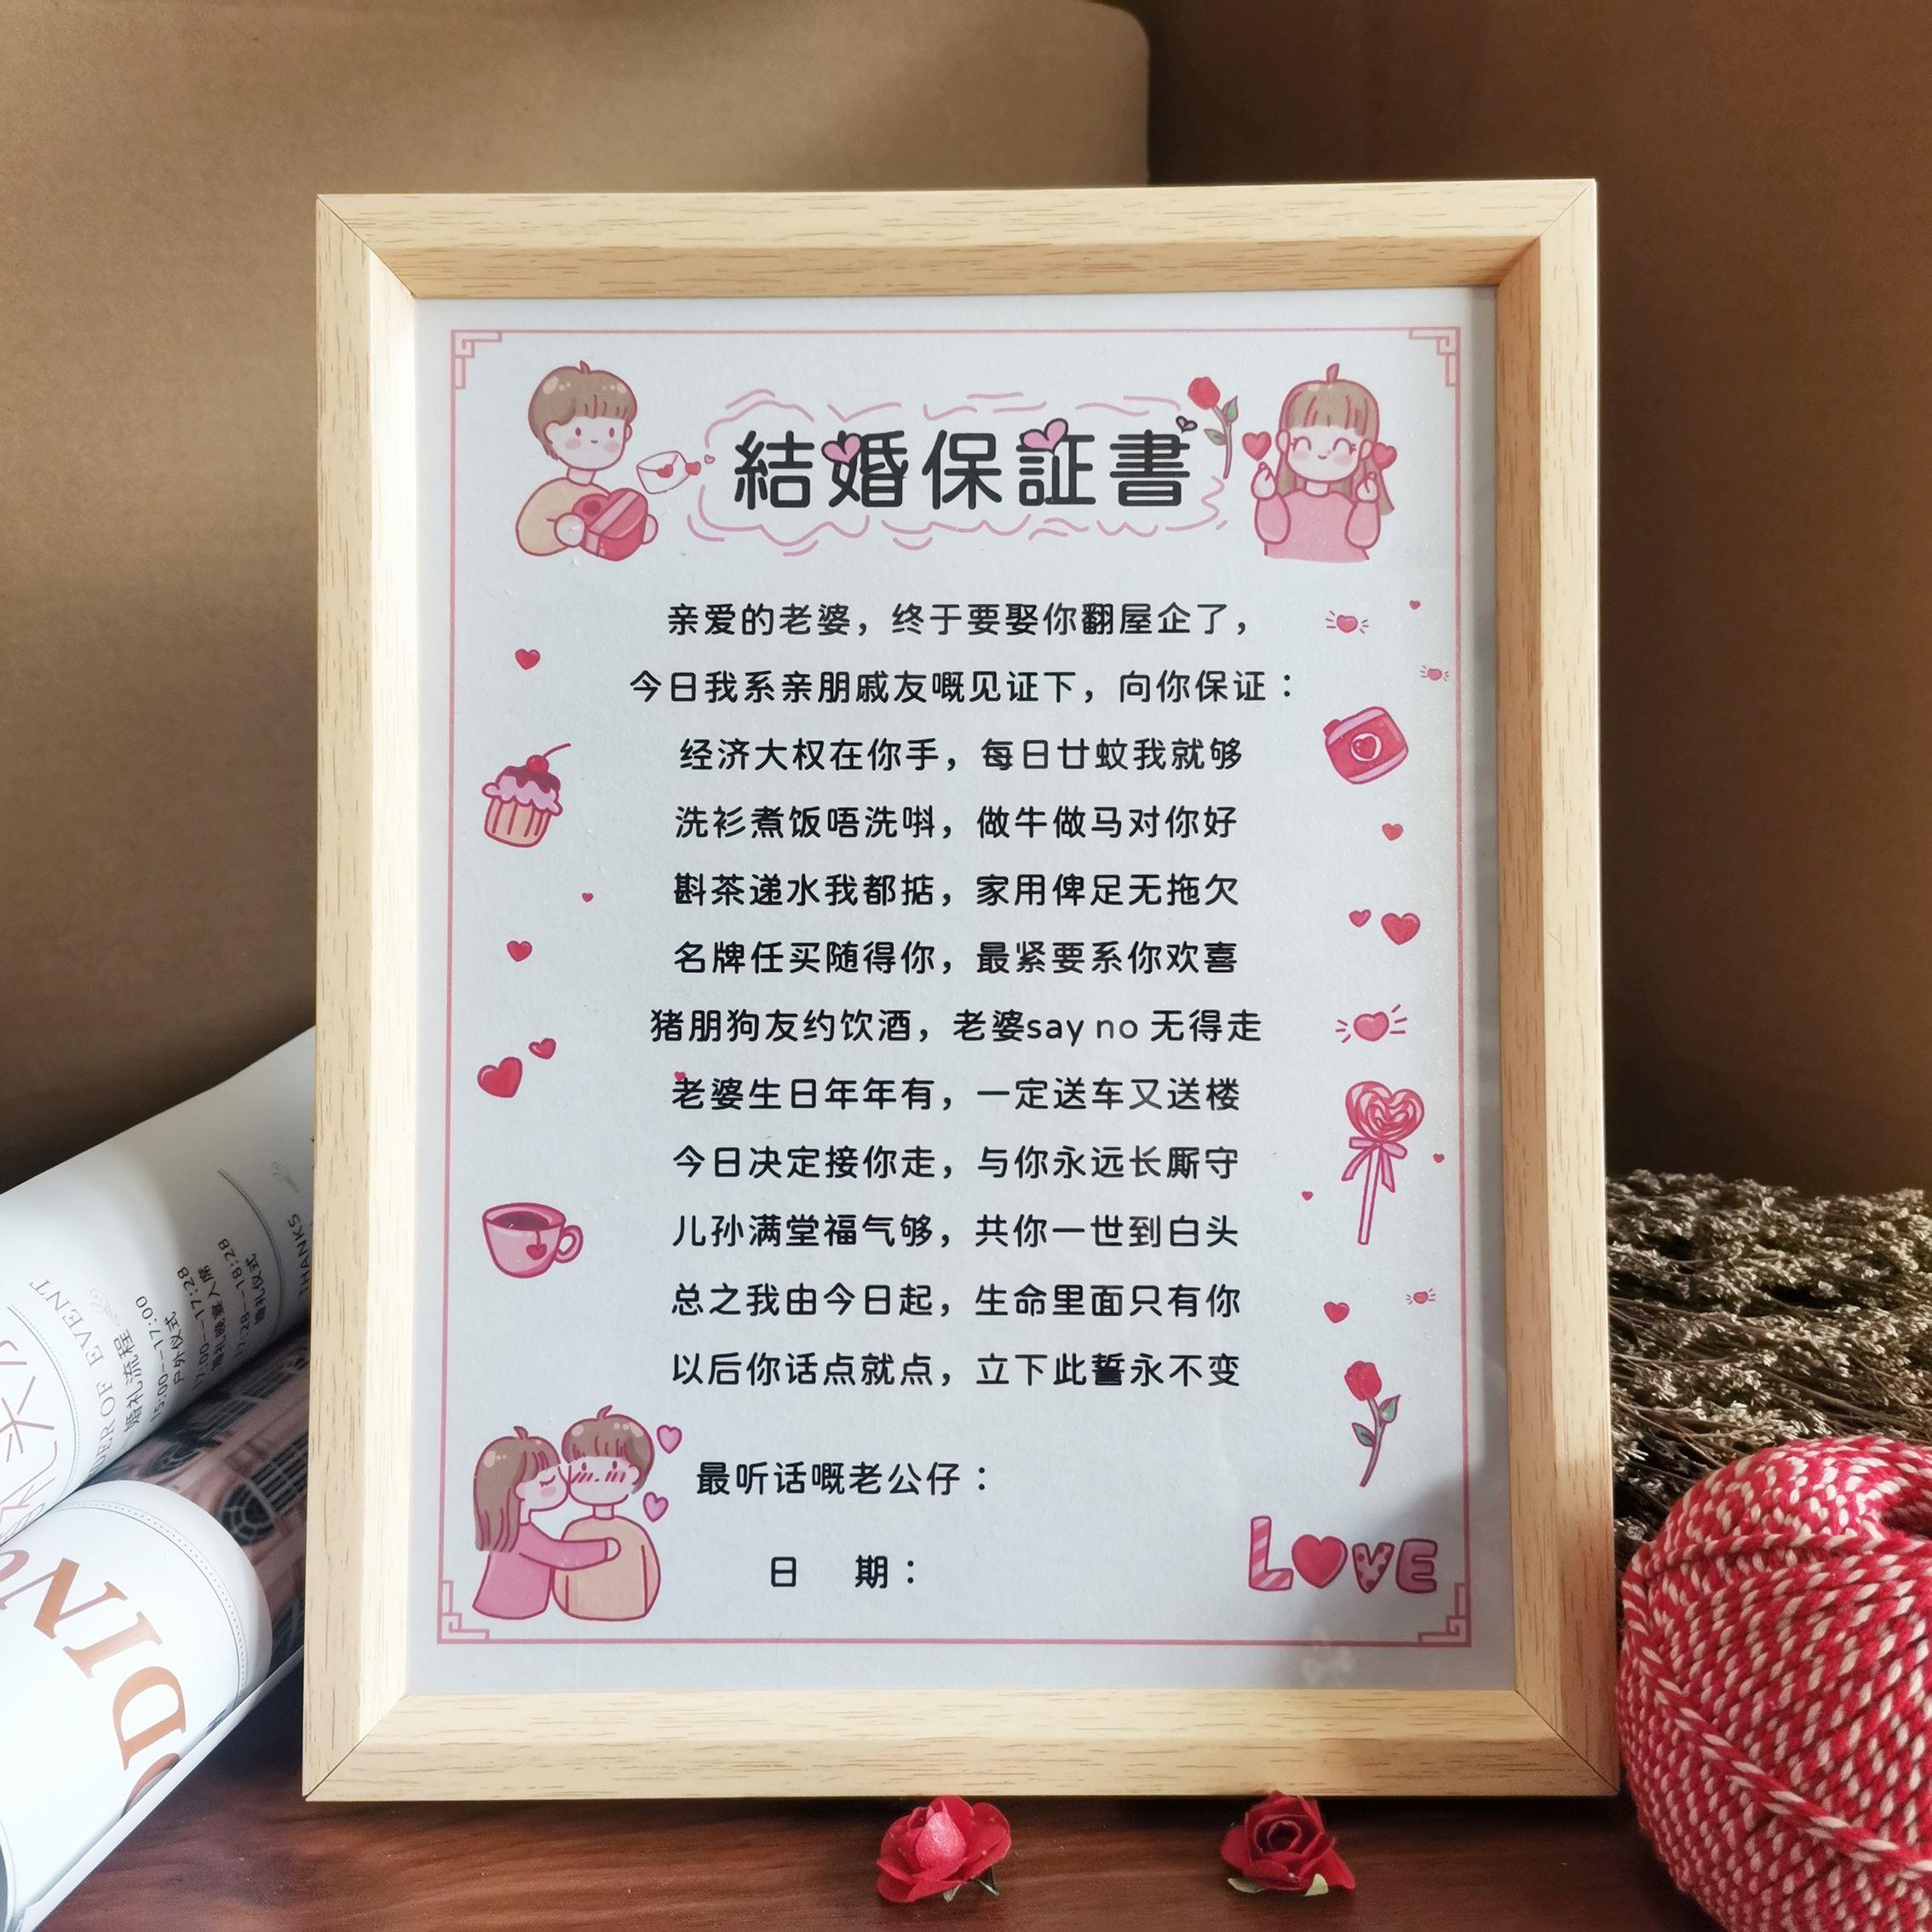 繁体粤语结婚趣味证书结婚誓言书爱的承诺接亲堵门游戏卡通图带框